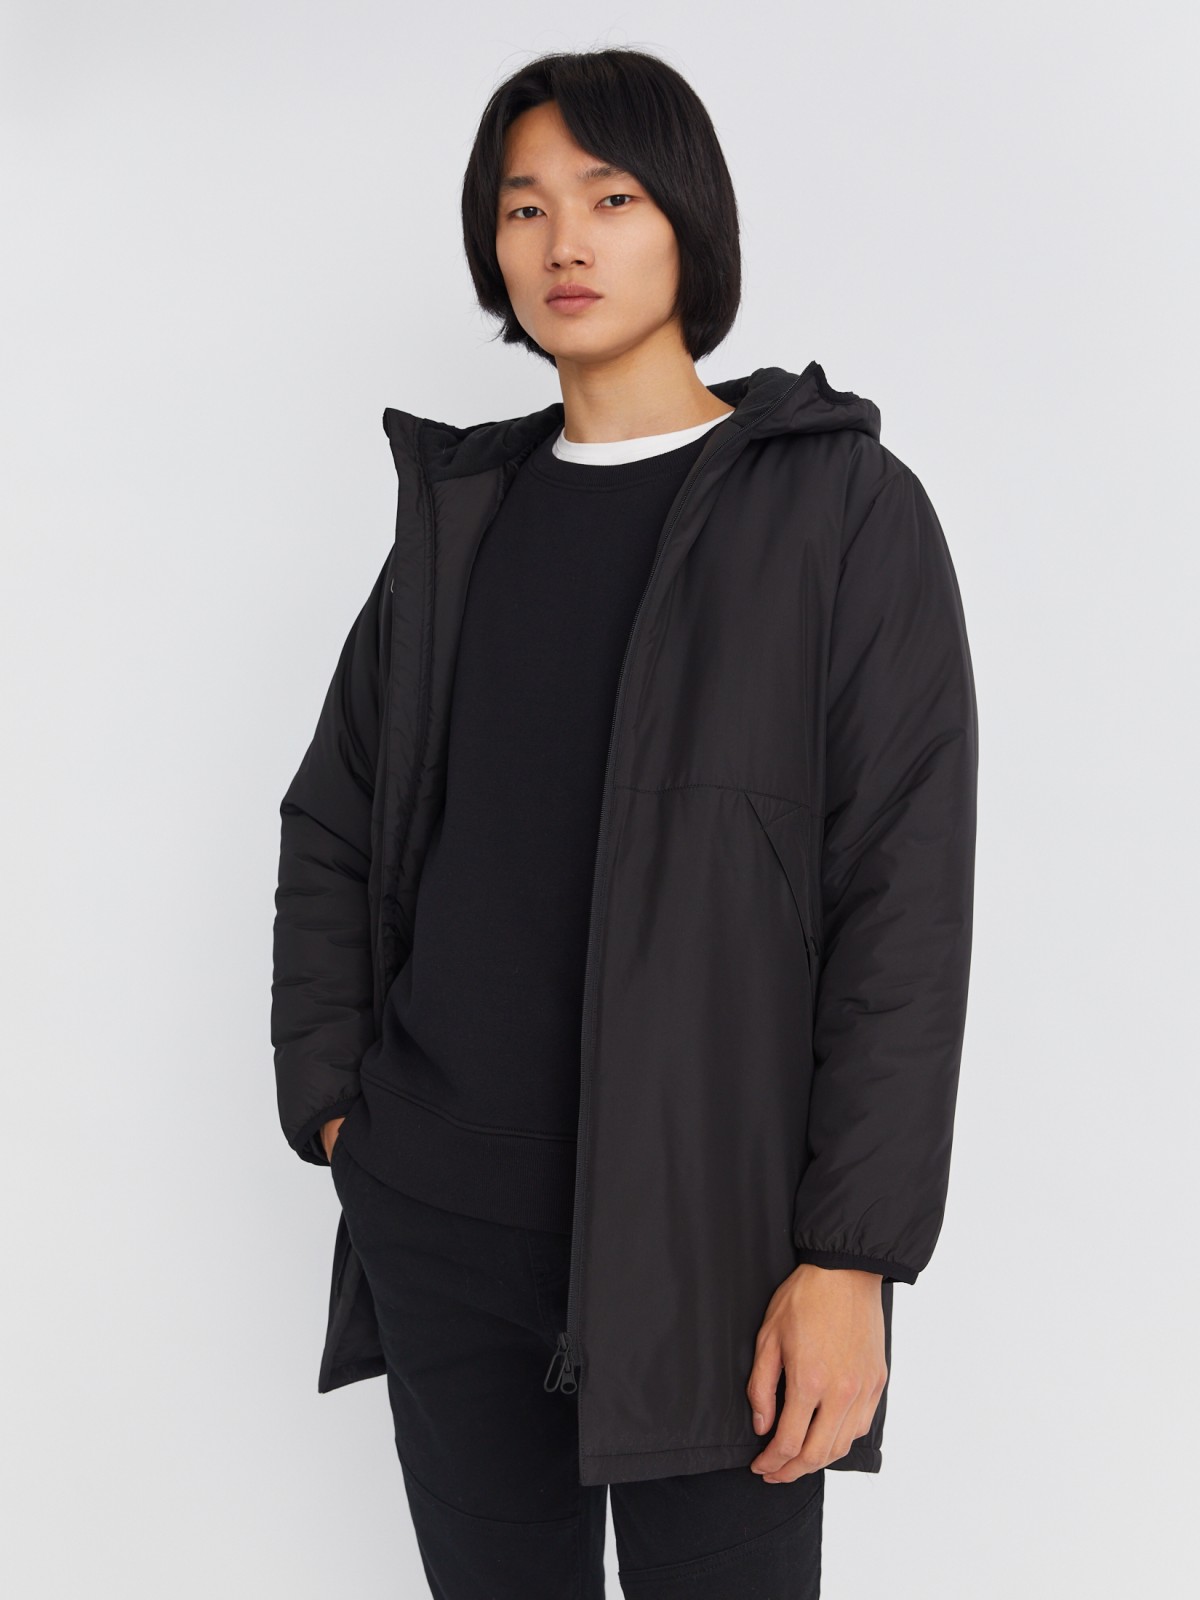 Тёплая удлинённая куртка-парка на синтепоне с капюшоном zolla 013335202054, цвет черный, размер XL